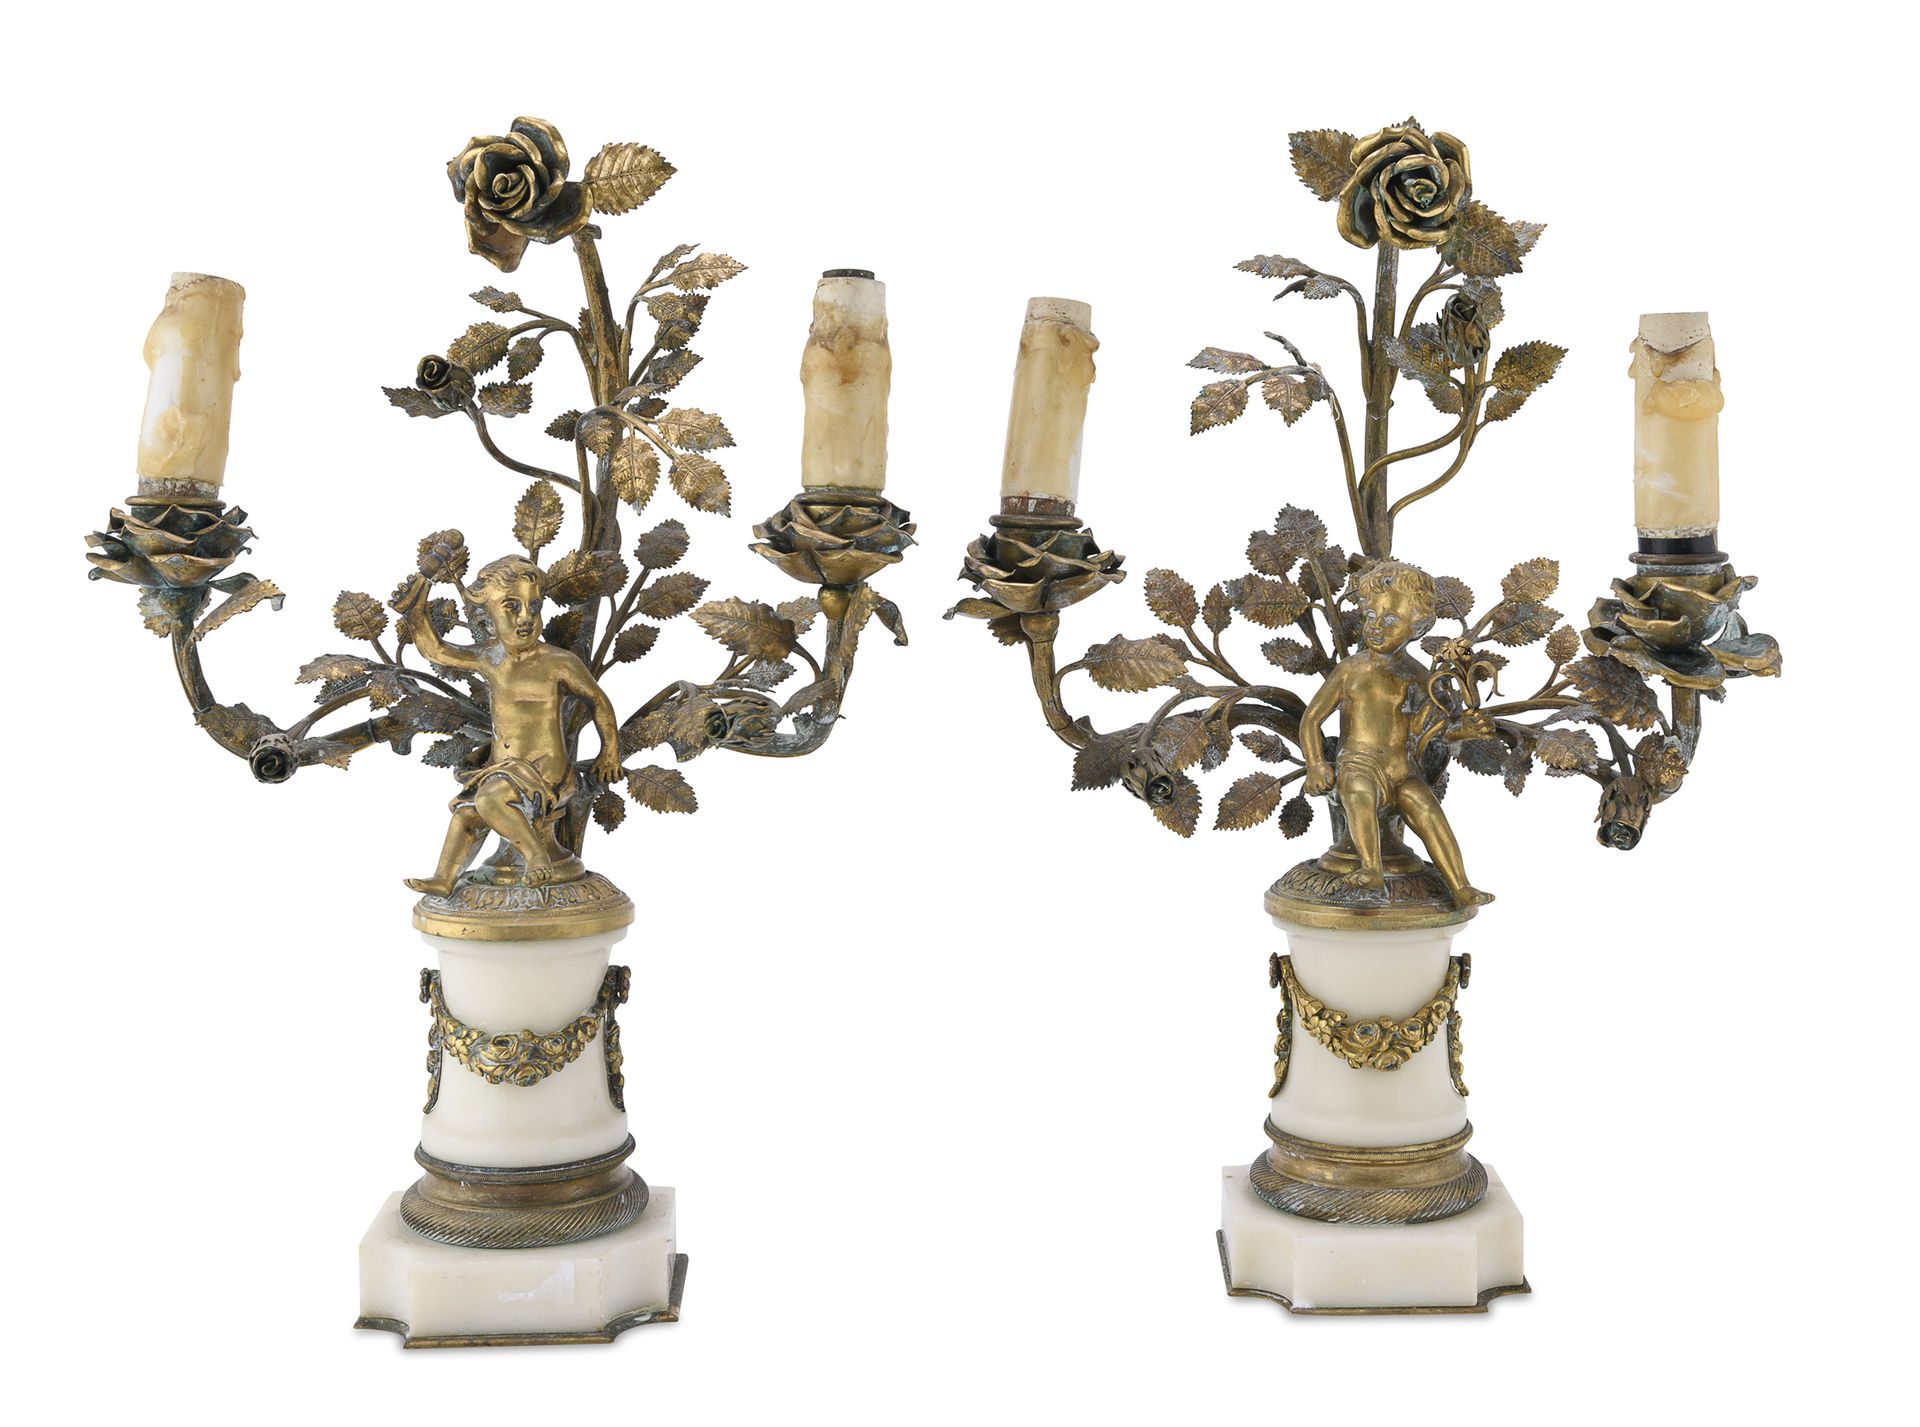 Null 青铜小烛台，19世纪初
有两个支架，上面有雾状和花纹的装饰，中心是寓意深刻的爱情图。黑色大理石底座，花纹饰边。 
Misure厘米。36 x 26 x&hellip;